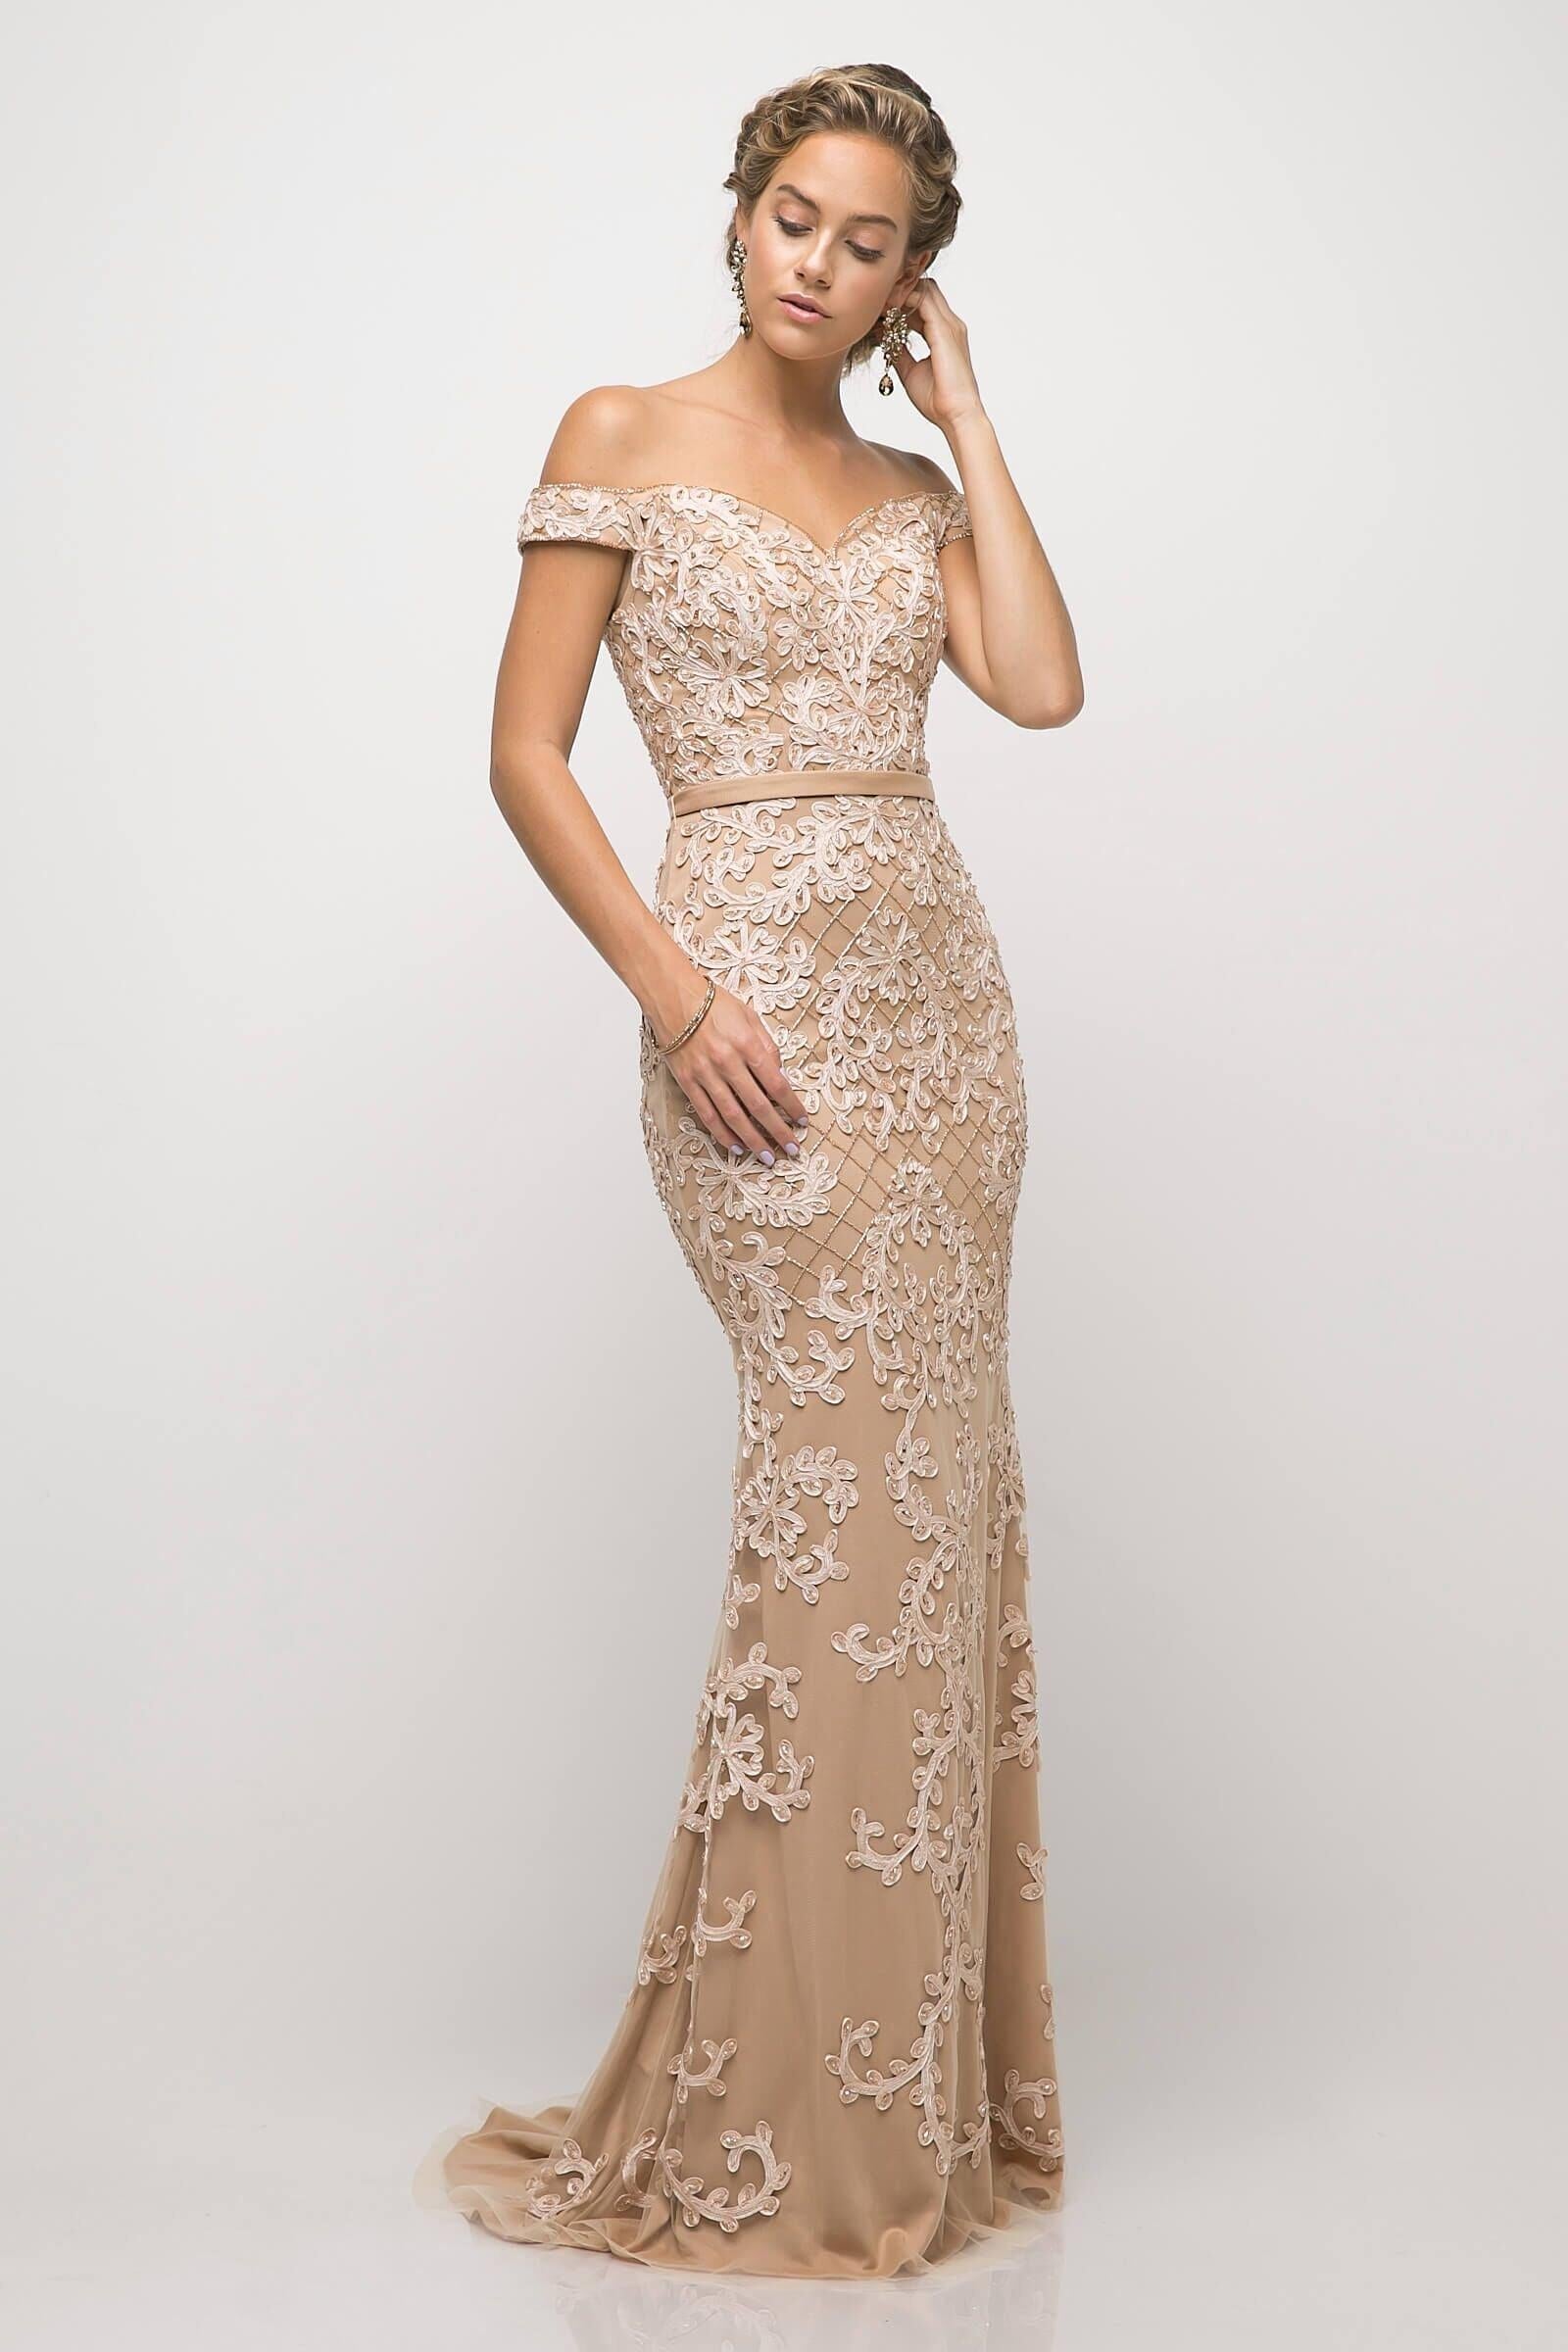 Long Formal Off Shoulder Beaded Lace Prom Dress - The Dress Outlet Cinderella Divine